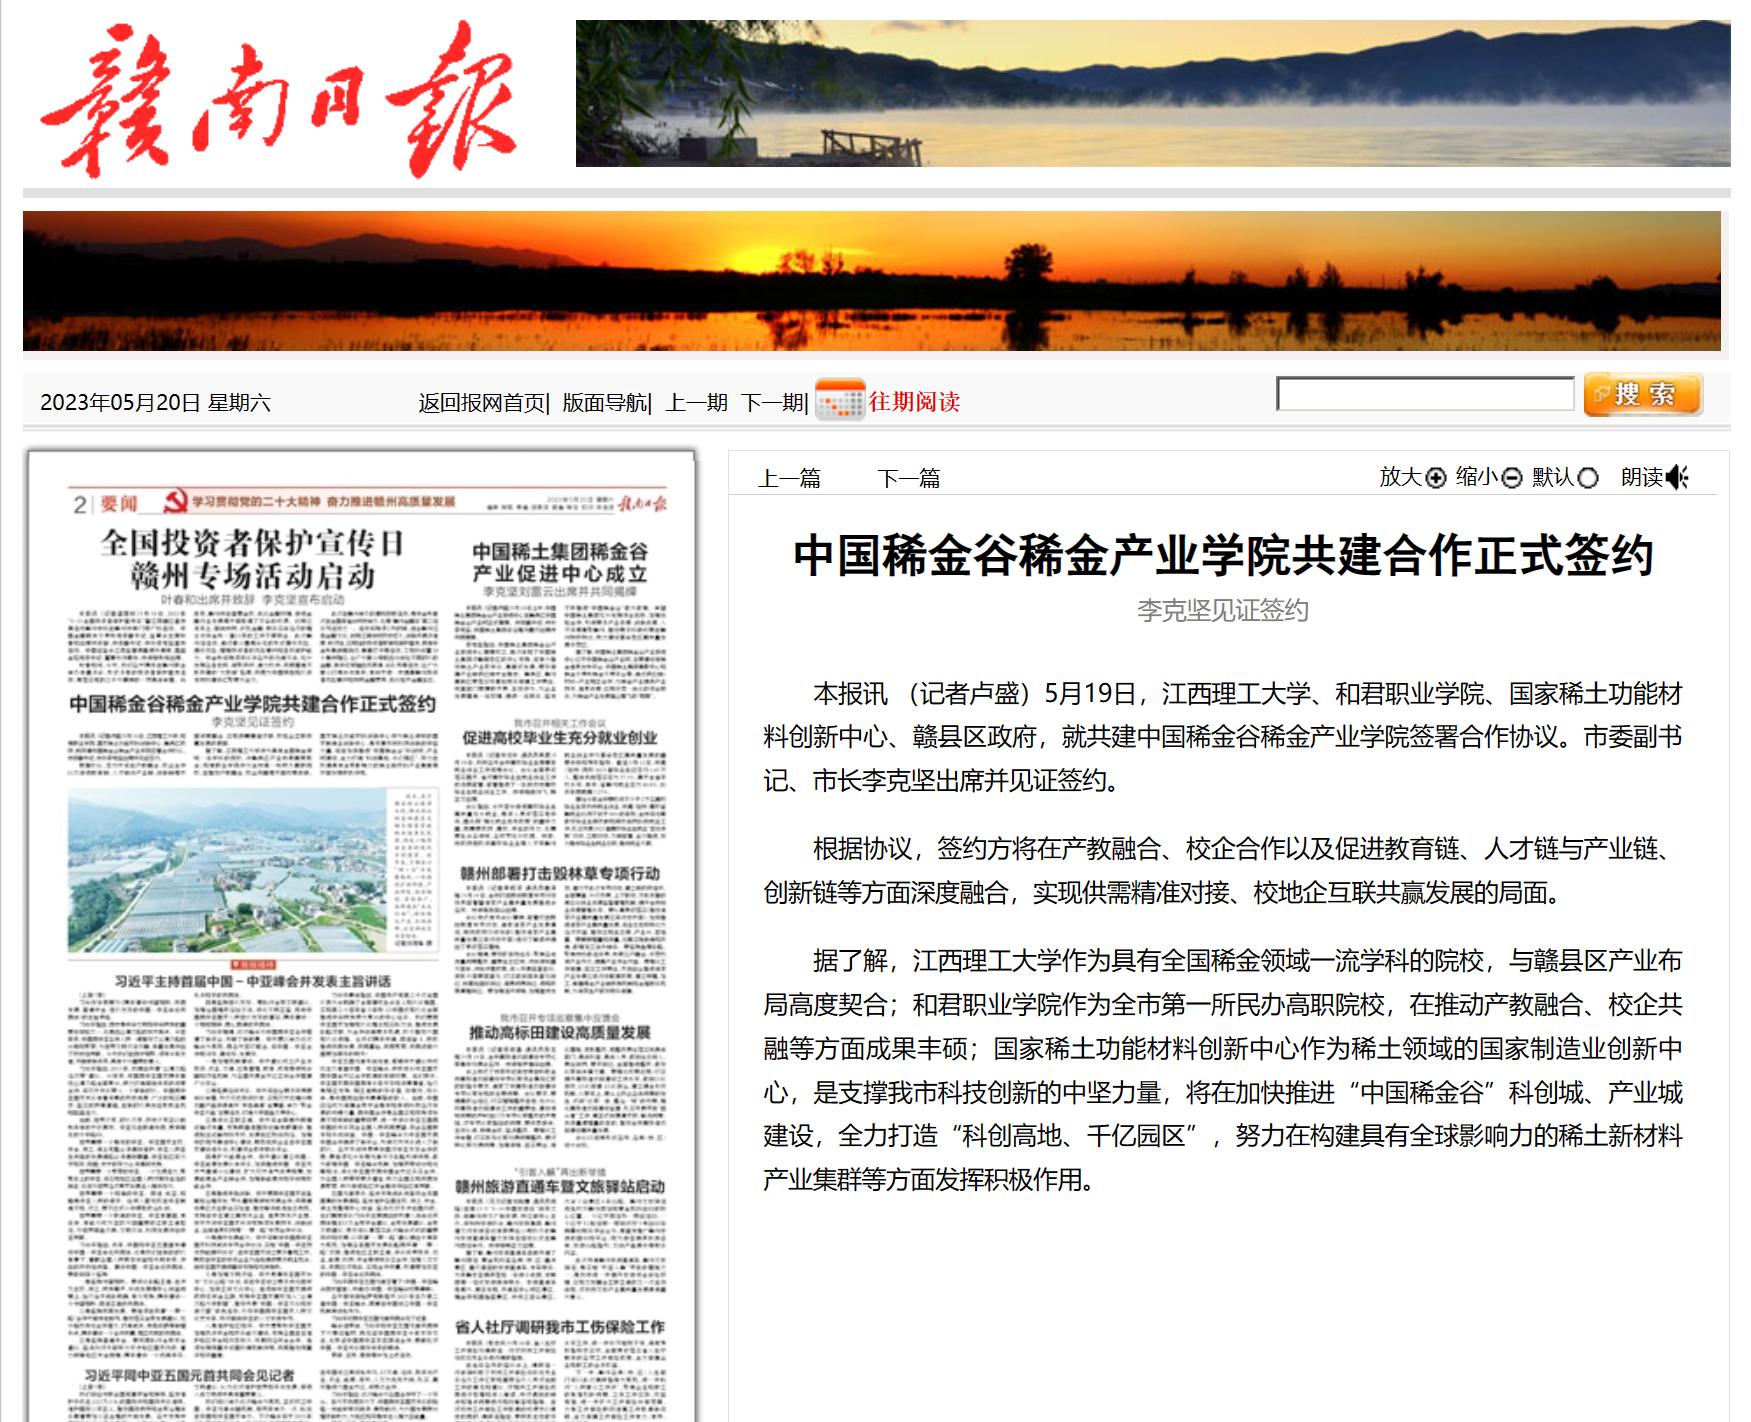 【赣南日报】中国稀金谷稀金产业学院共建合作协议正式签约